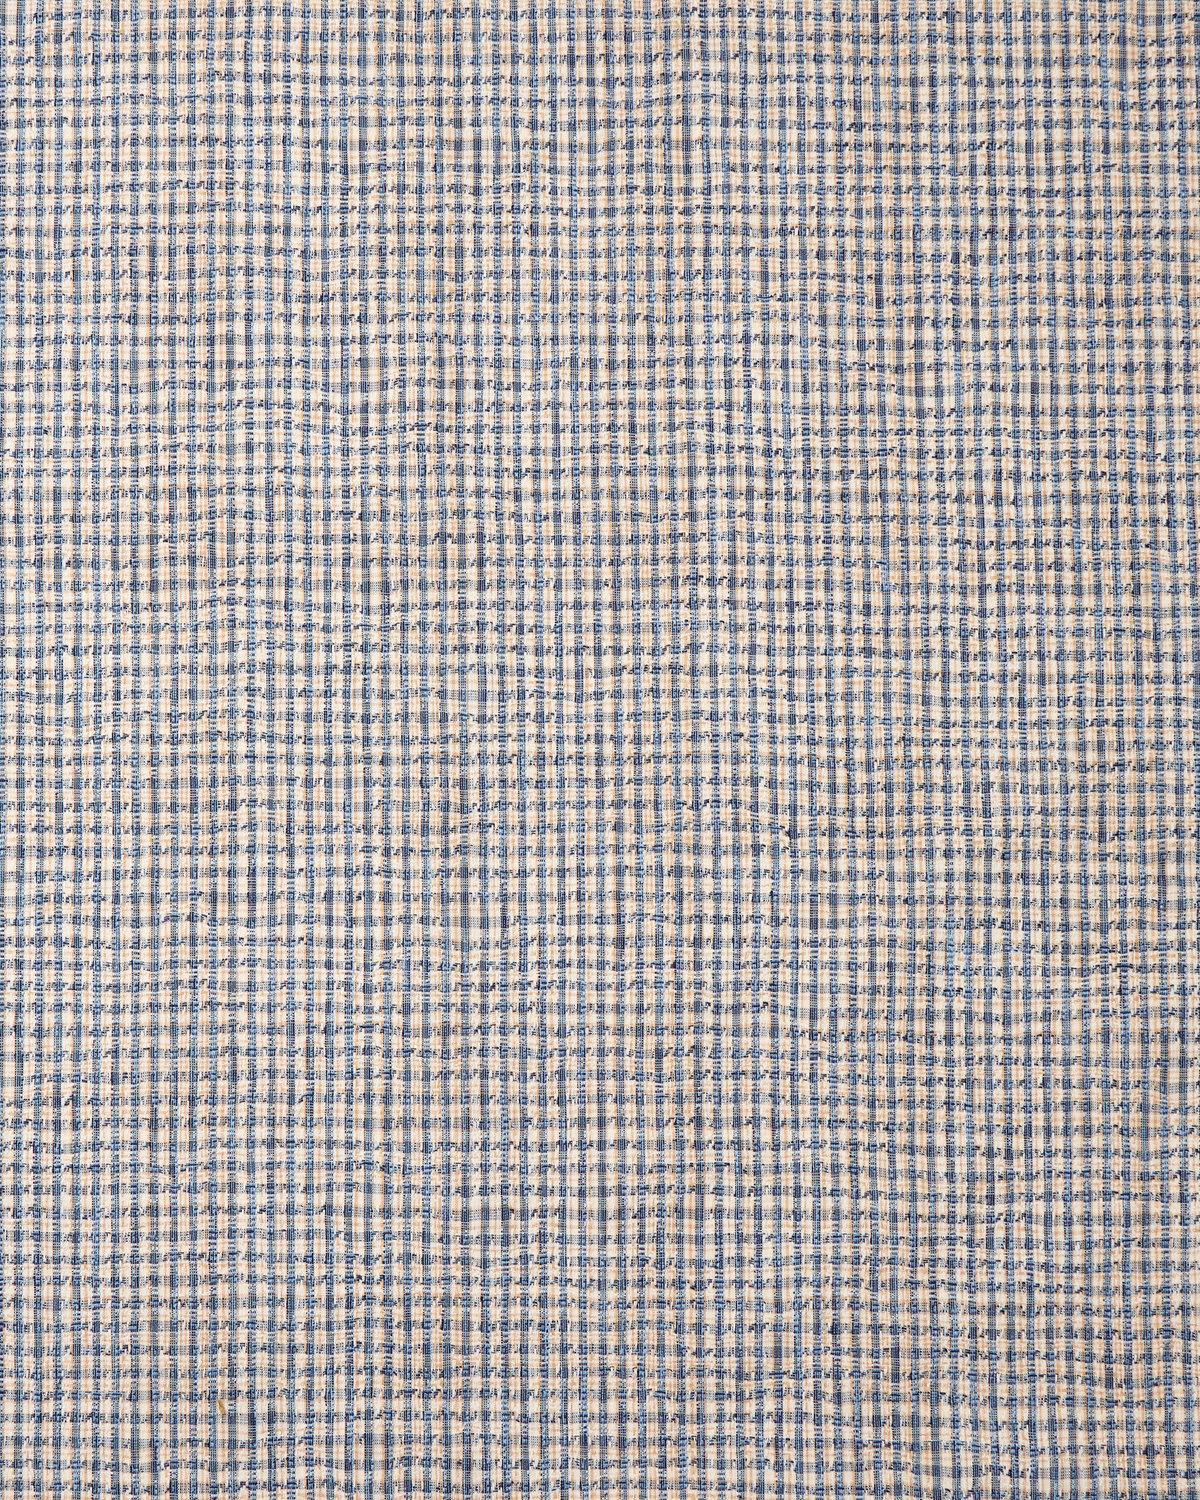 Mini Check Fabric in Blue